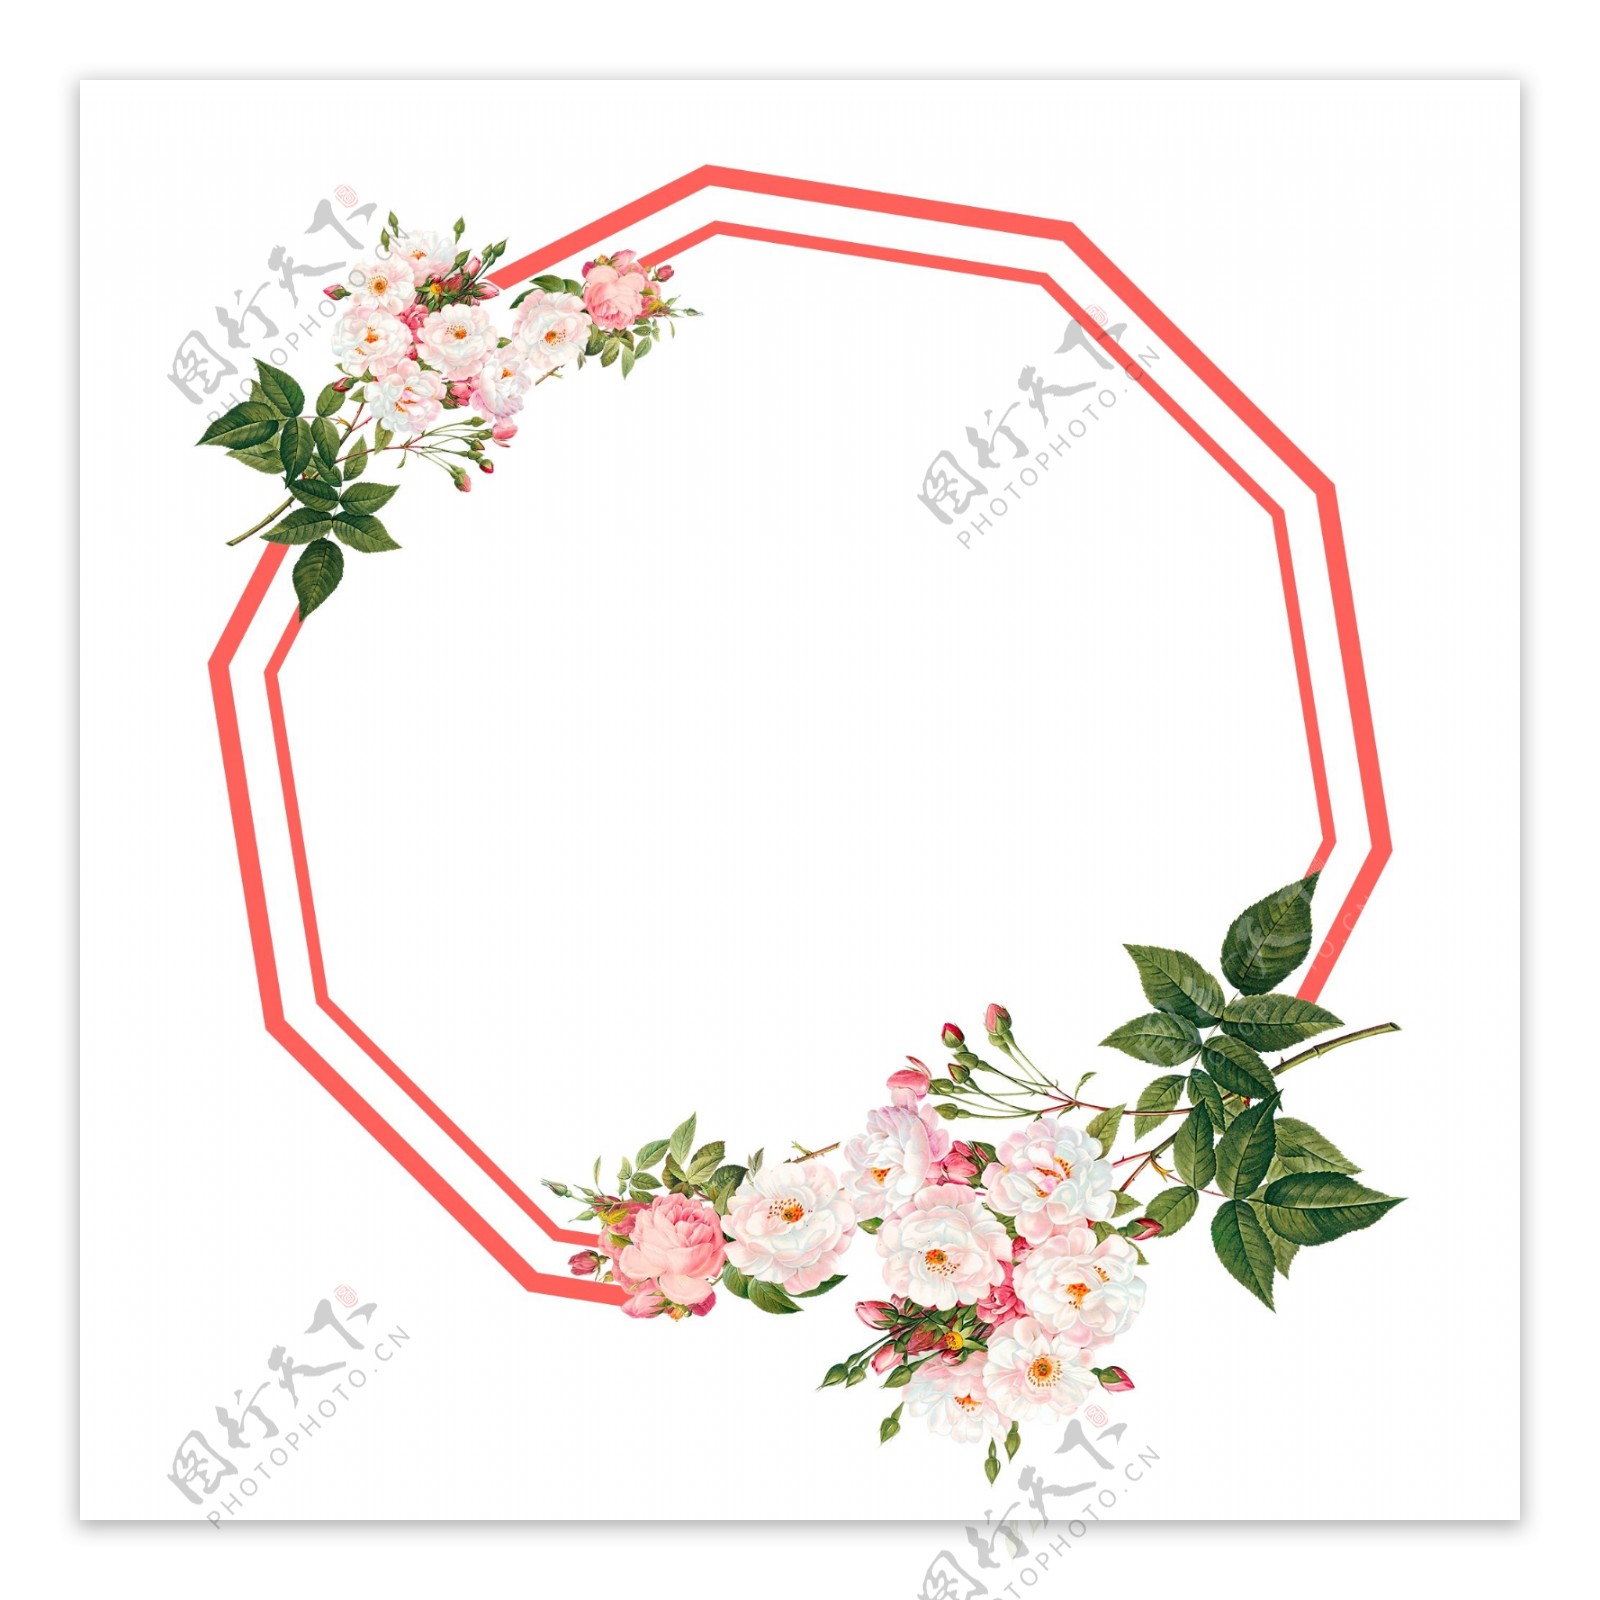 传统节日浪漫粉红色花朵边框多角形边框